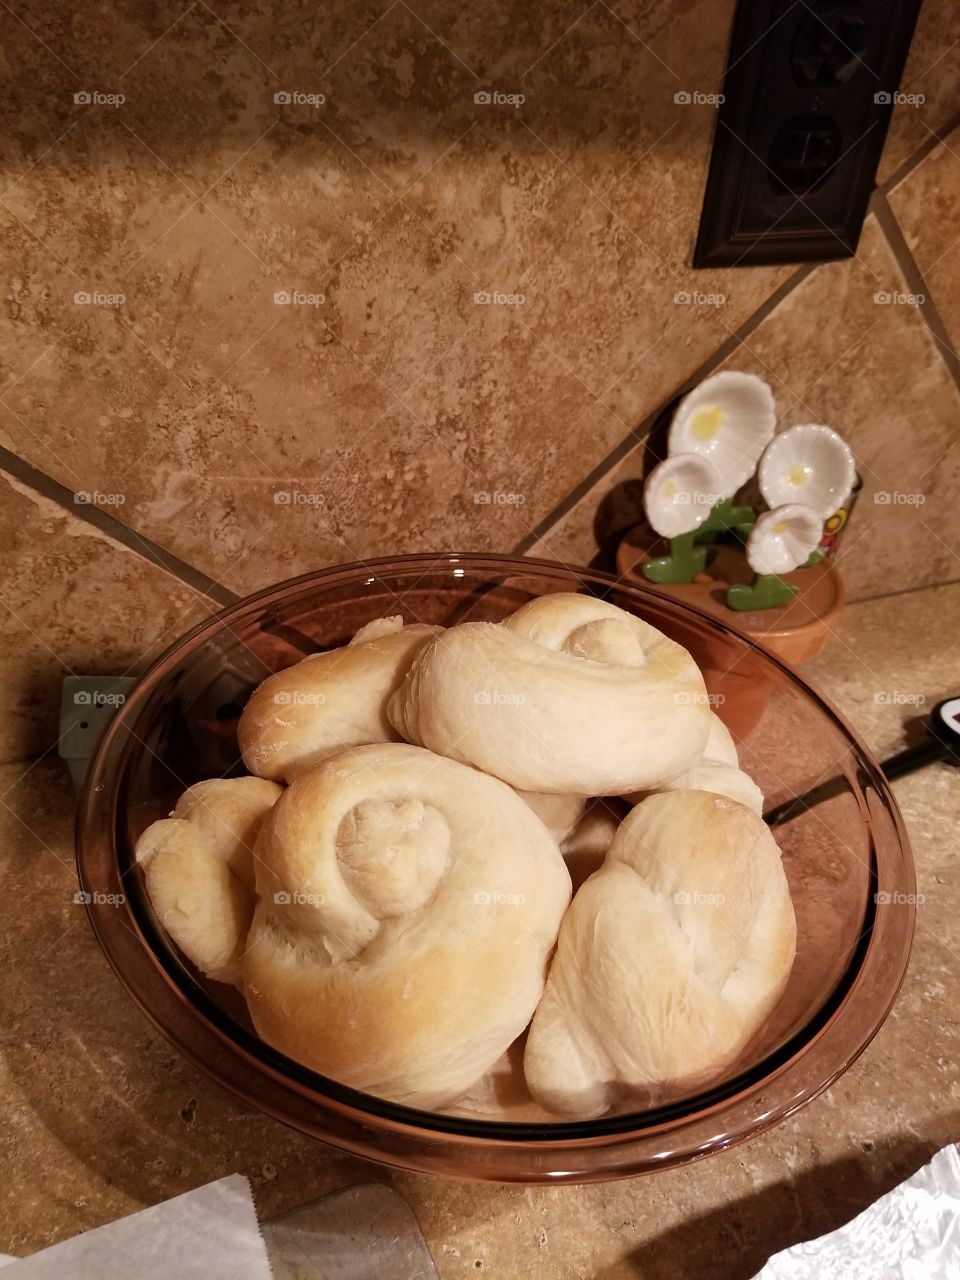 Bowl of warm yeast rolls so yummy